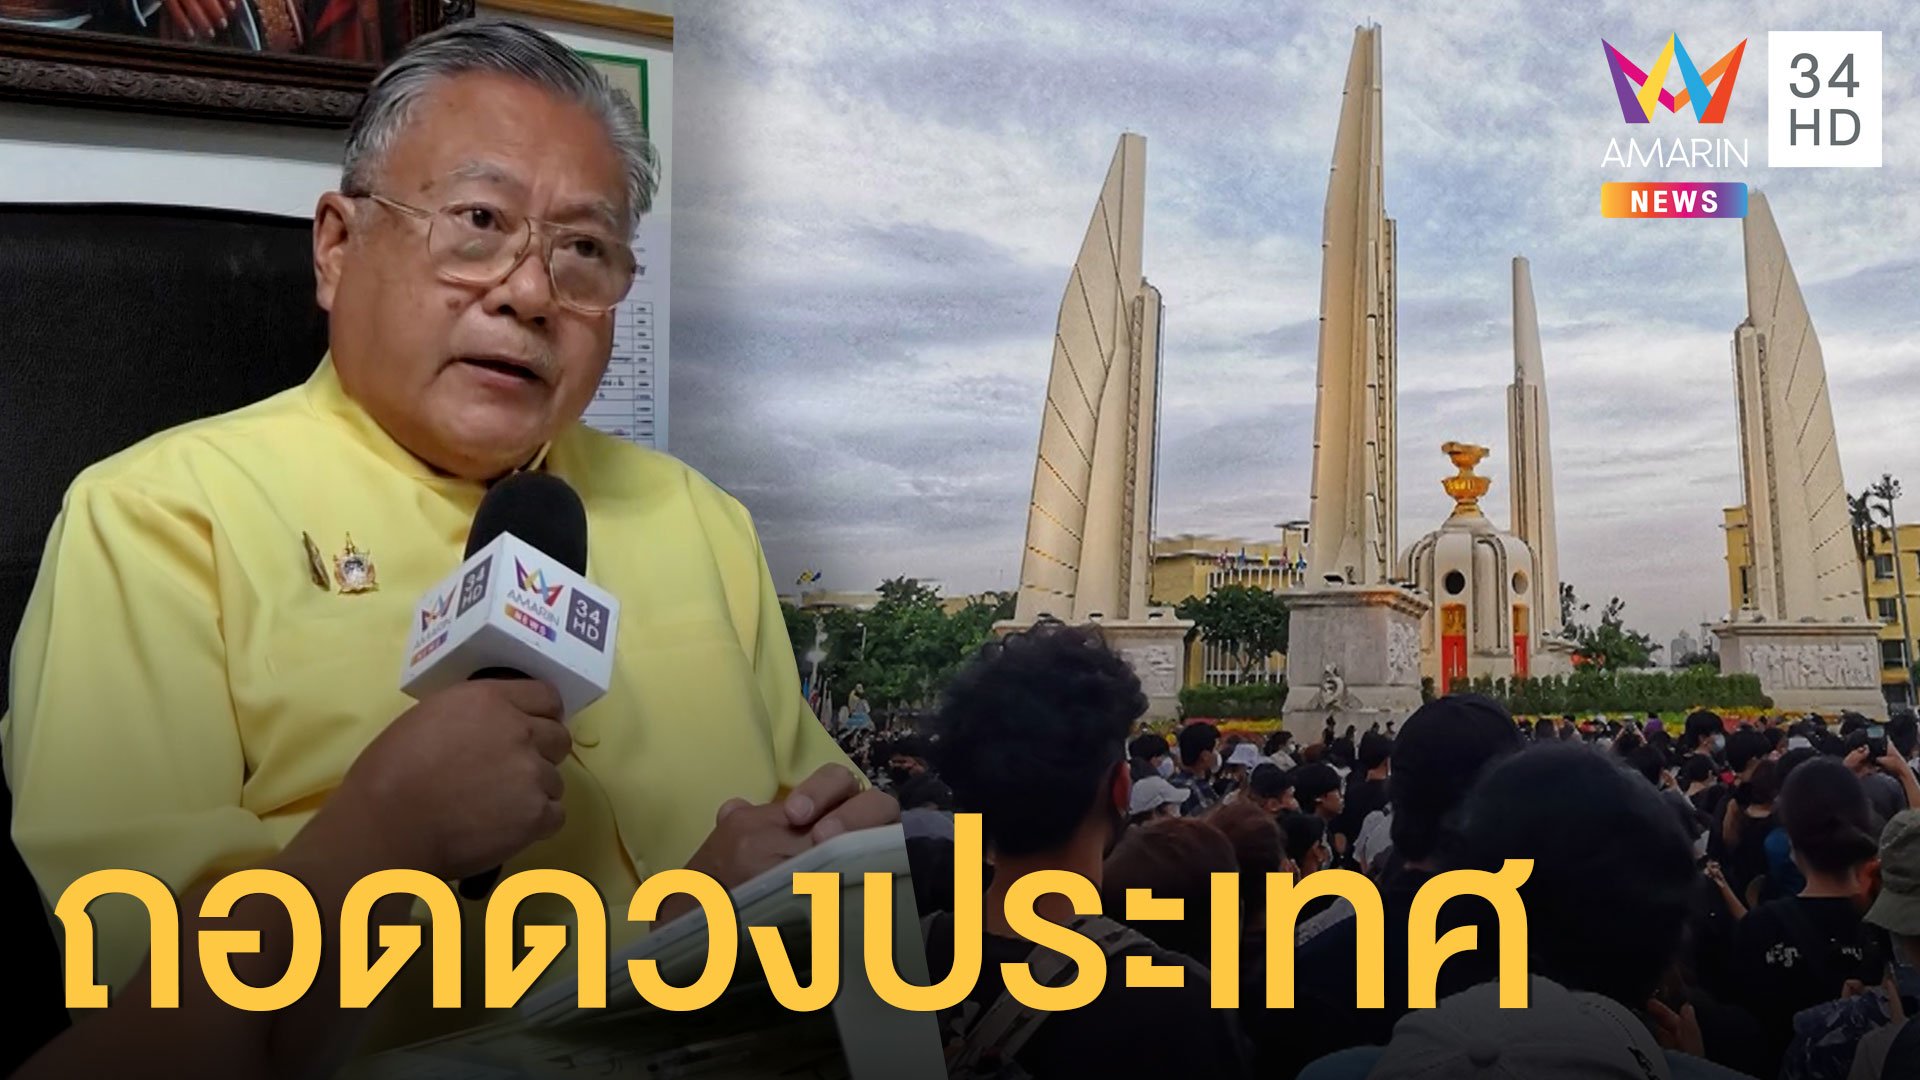 ซินแสดัง ถอดดวงประเทศไทย อาจเกิดความหายนะ | ข่าวอรุณอมรินทร์ | 17 ก.ย. 63 | AMARIN TVHD34